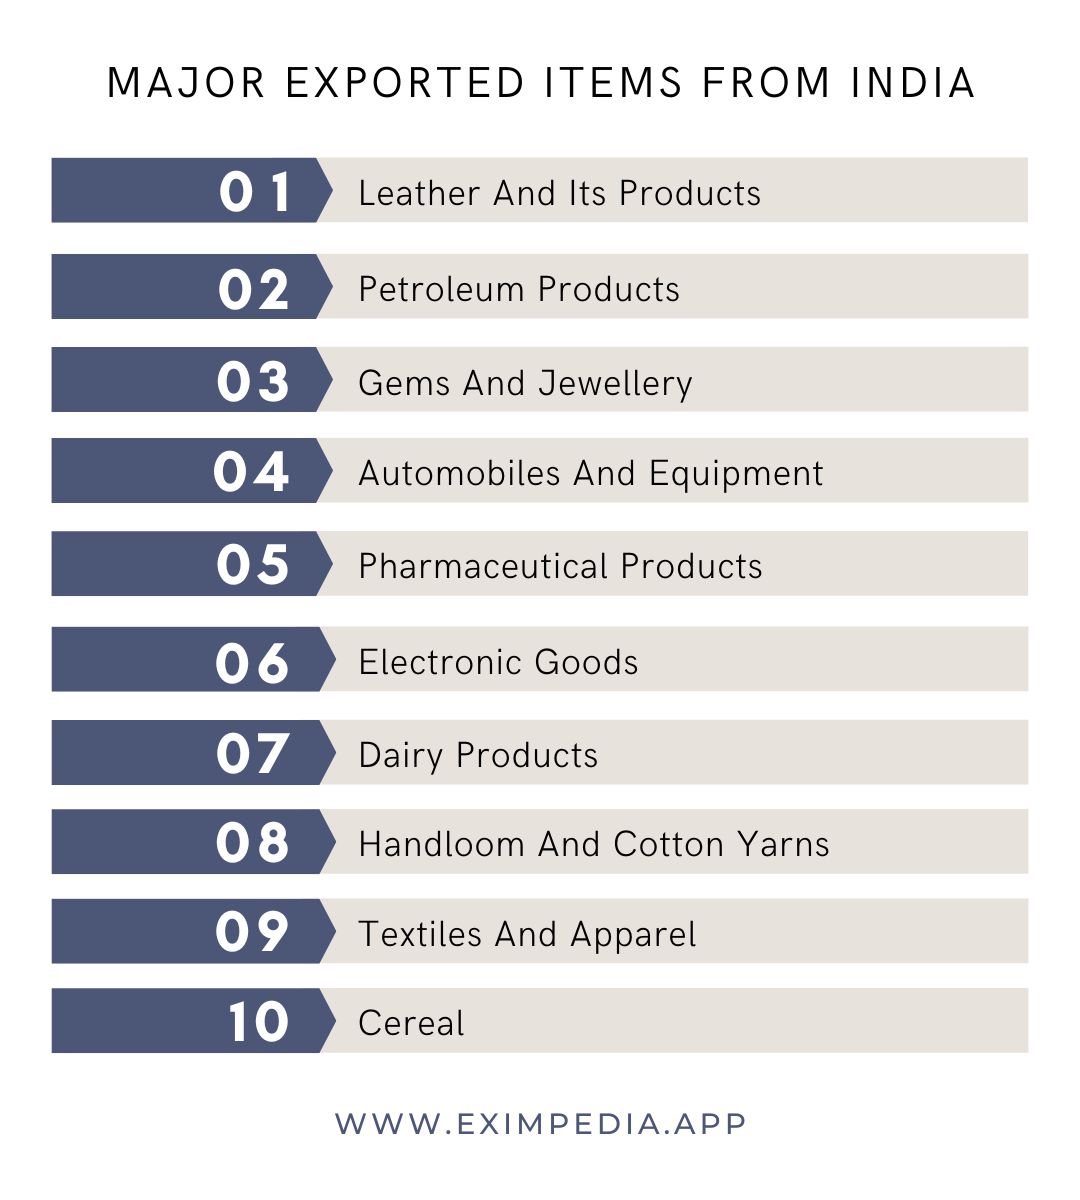 Major Export